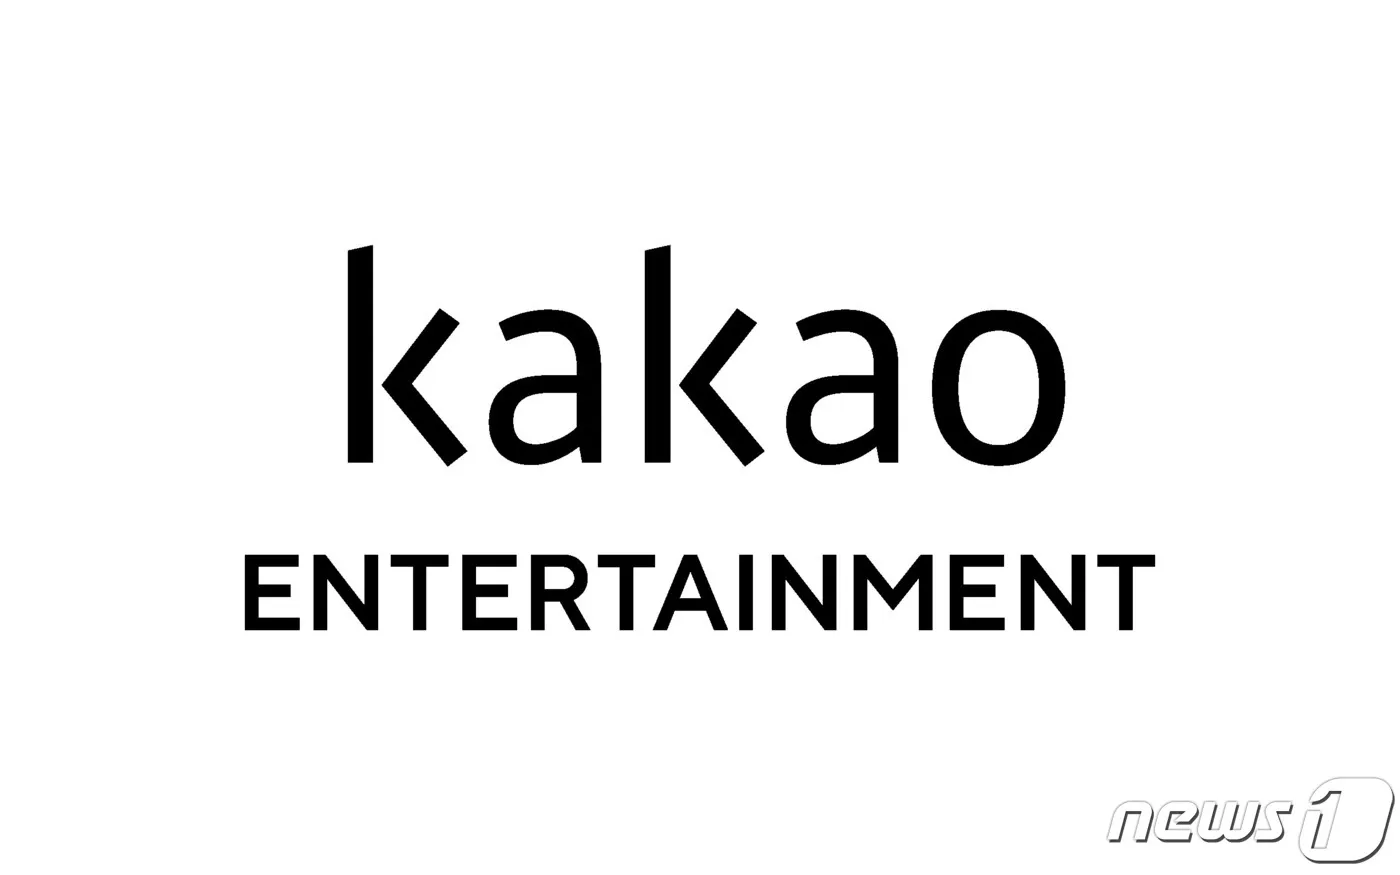 Kakao acusado de possuir esta página para elogiar IVE e difamar grupos concorrentes